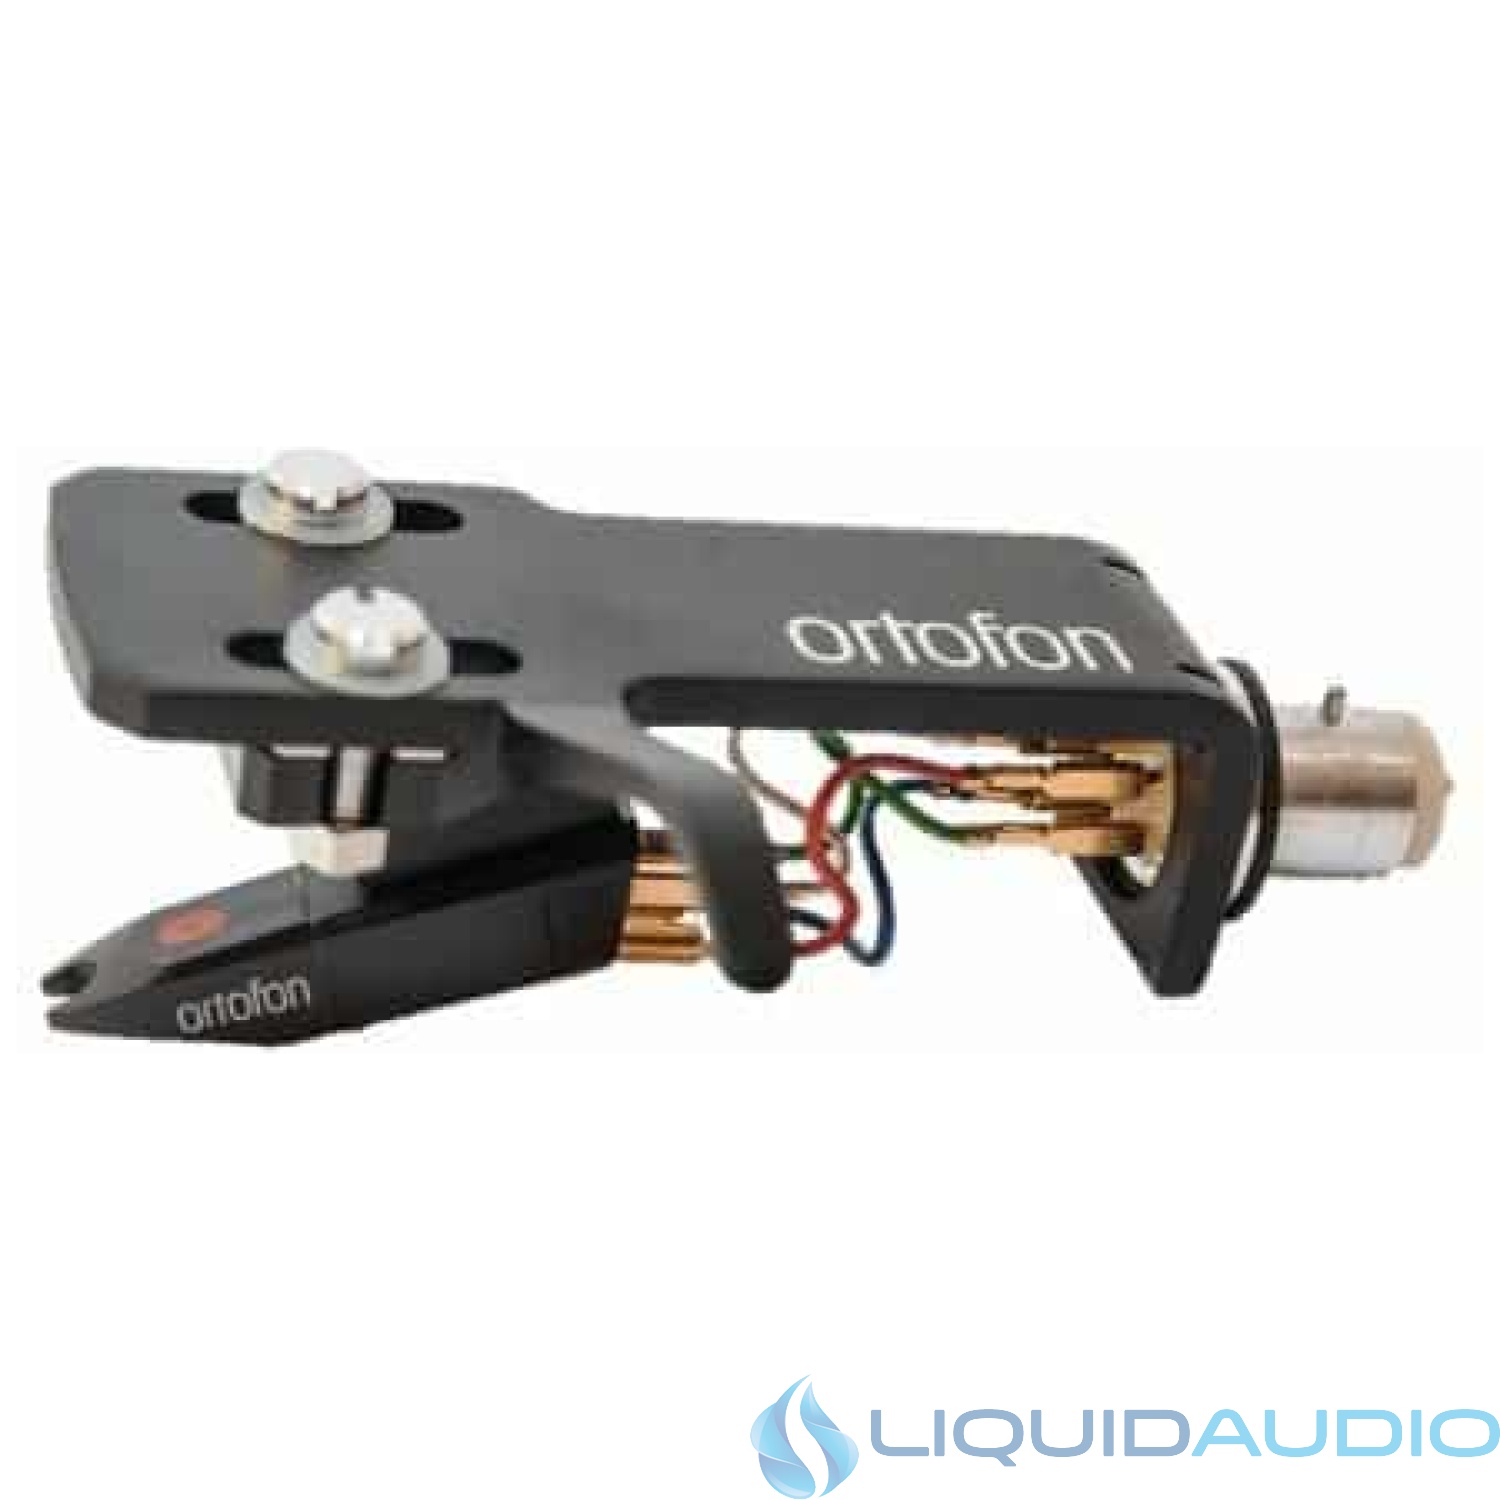 Ortofon Pro S Cartridge OM Premount on SH-4 Headshell